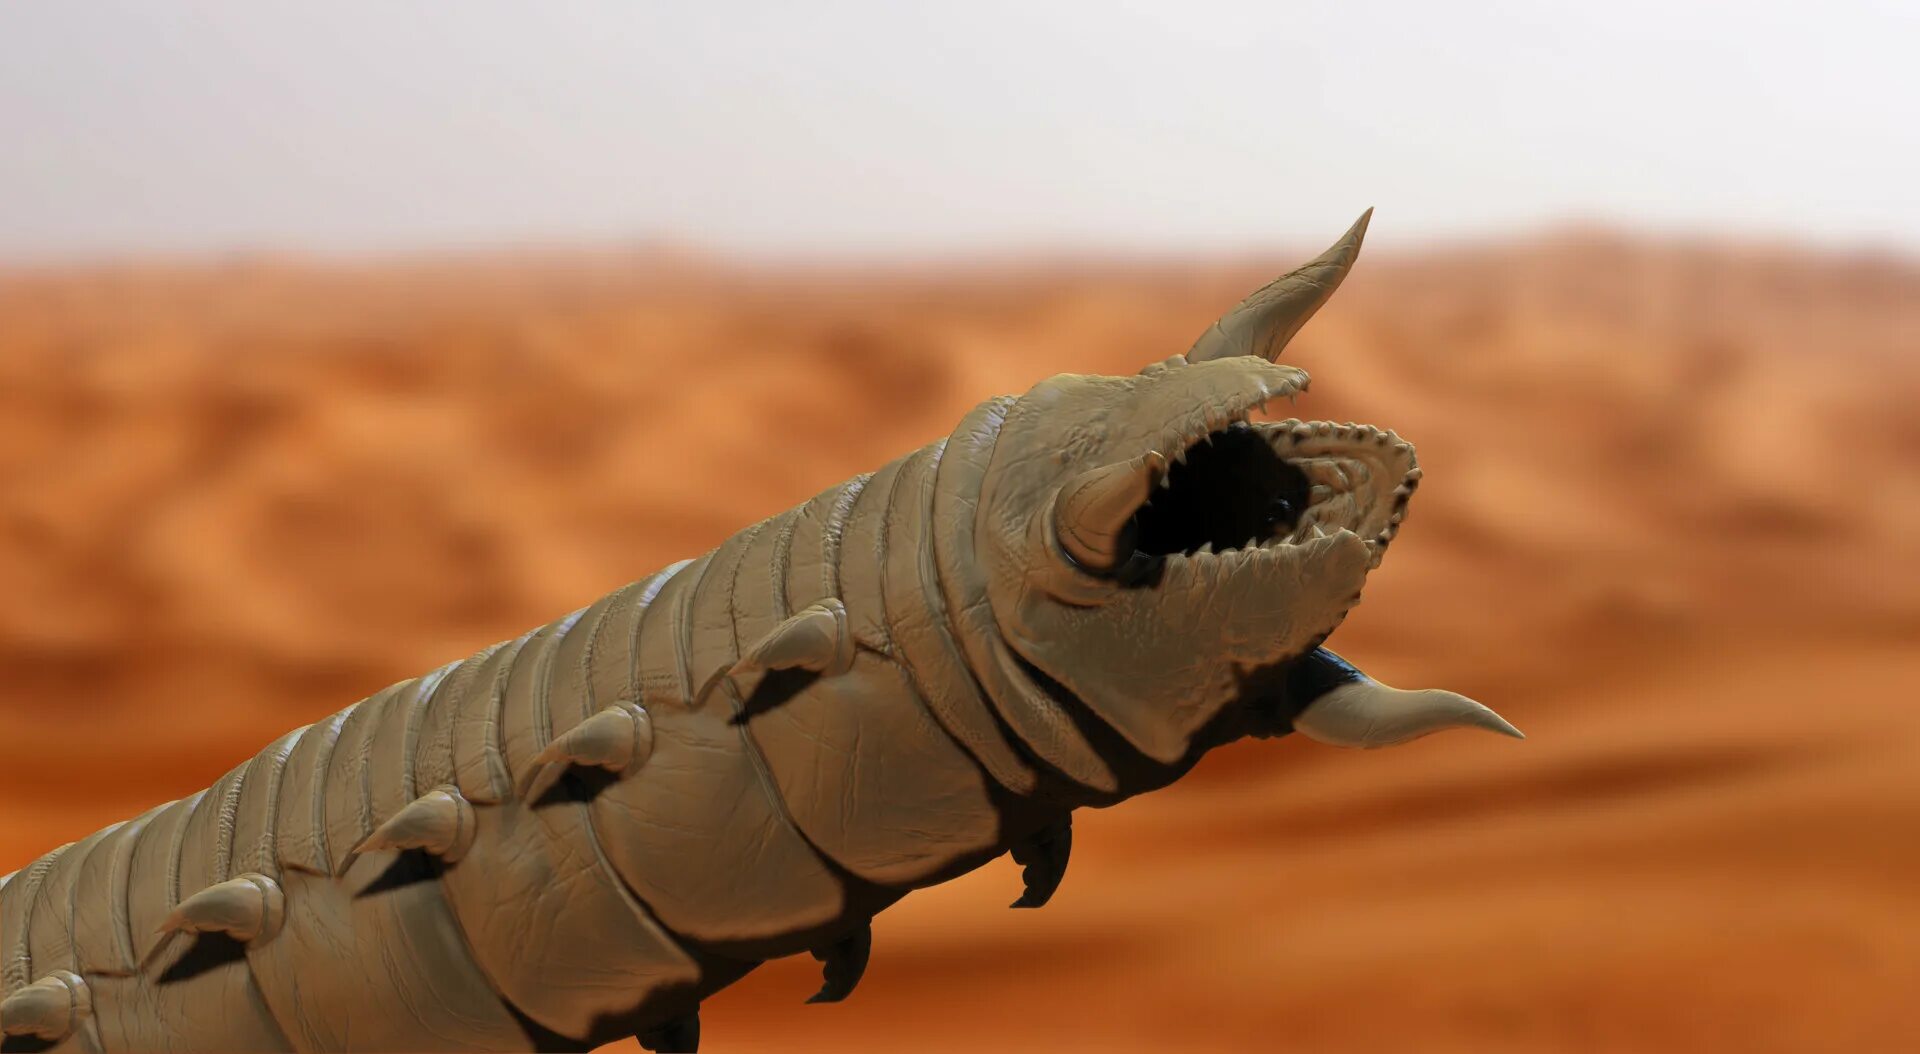 Пустынный червь Дюна. Песчаный червь Дюна. Dune 2021 Sandworm. Песчаного червя Шаи́-Хулуда Дюна.